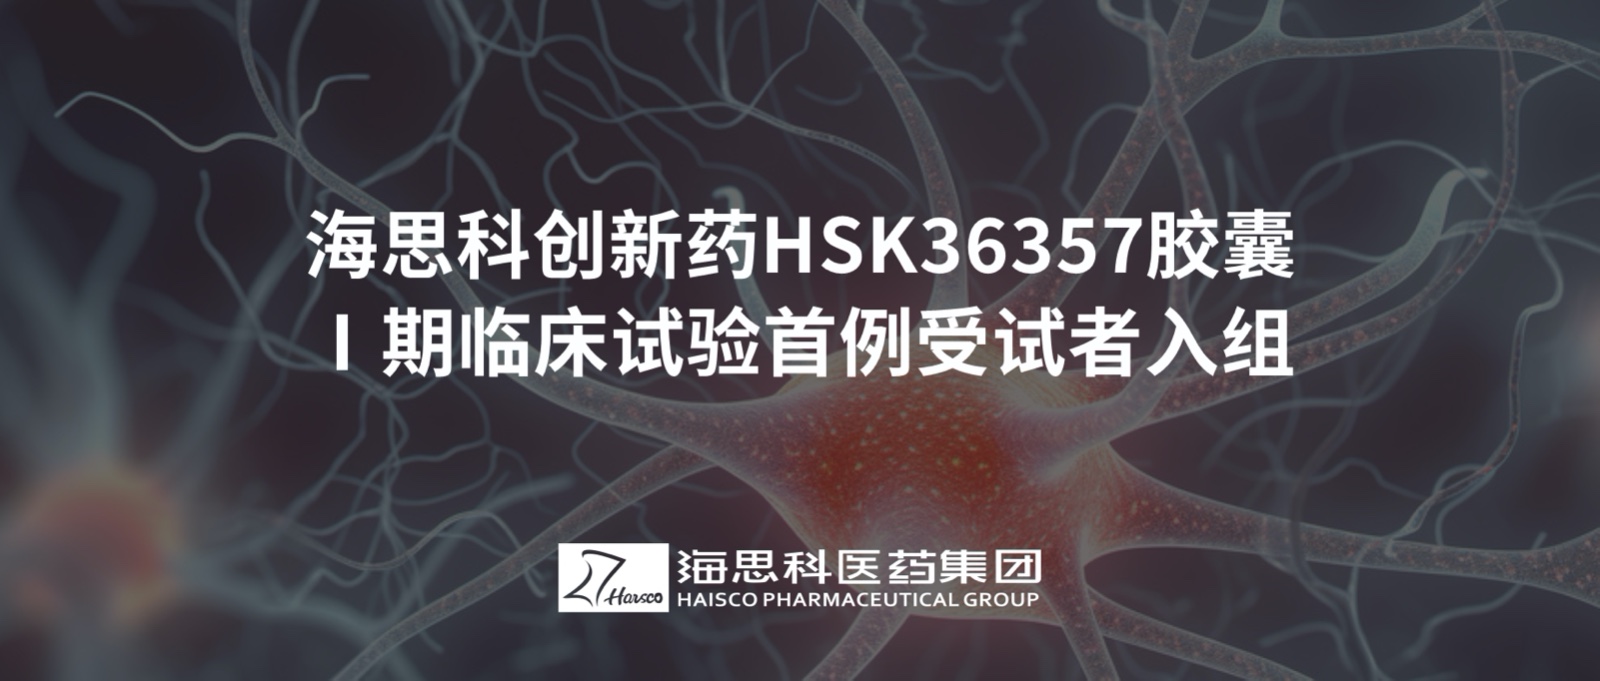 888集团电子游戏官方网站创新药HSK36357胶囊Ⅰ期临床试验首例受试者入组